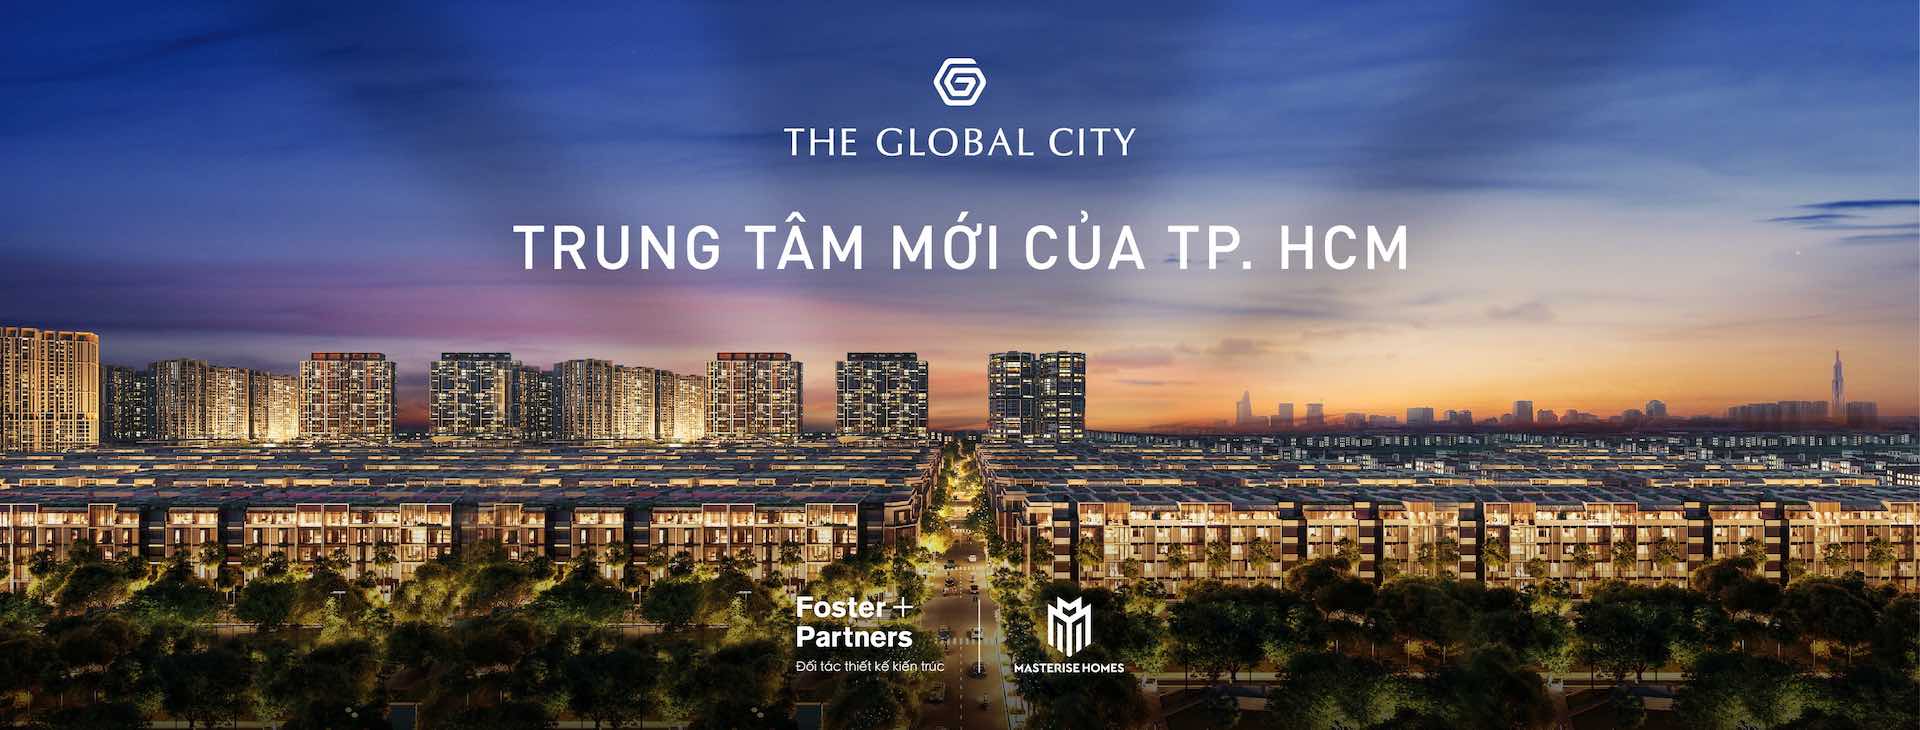 The Global City - Thông tin mua bán, cho thuê nhà dự án The Global City